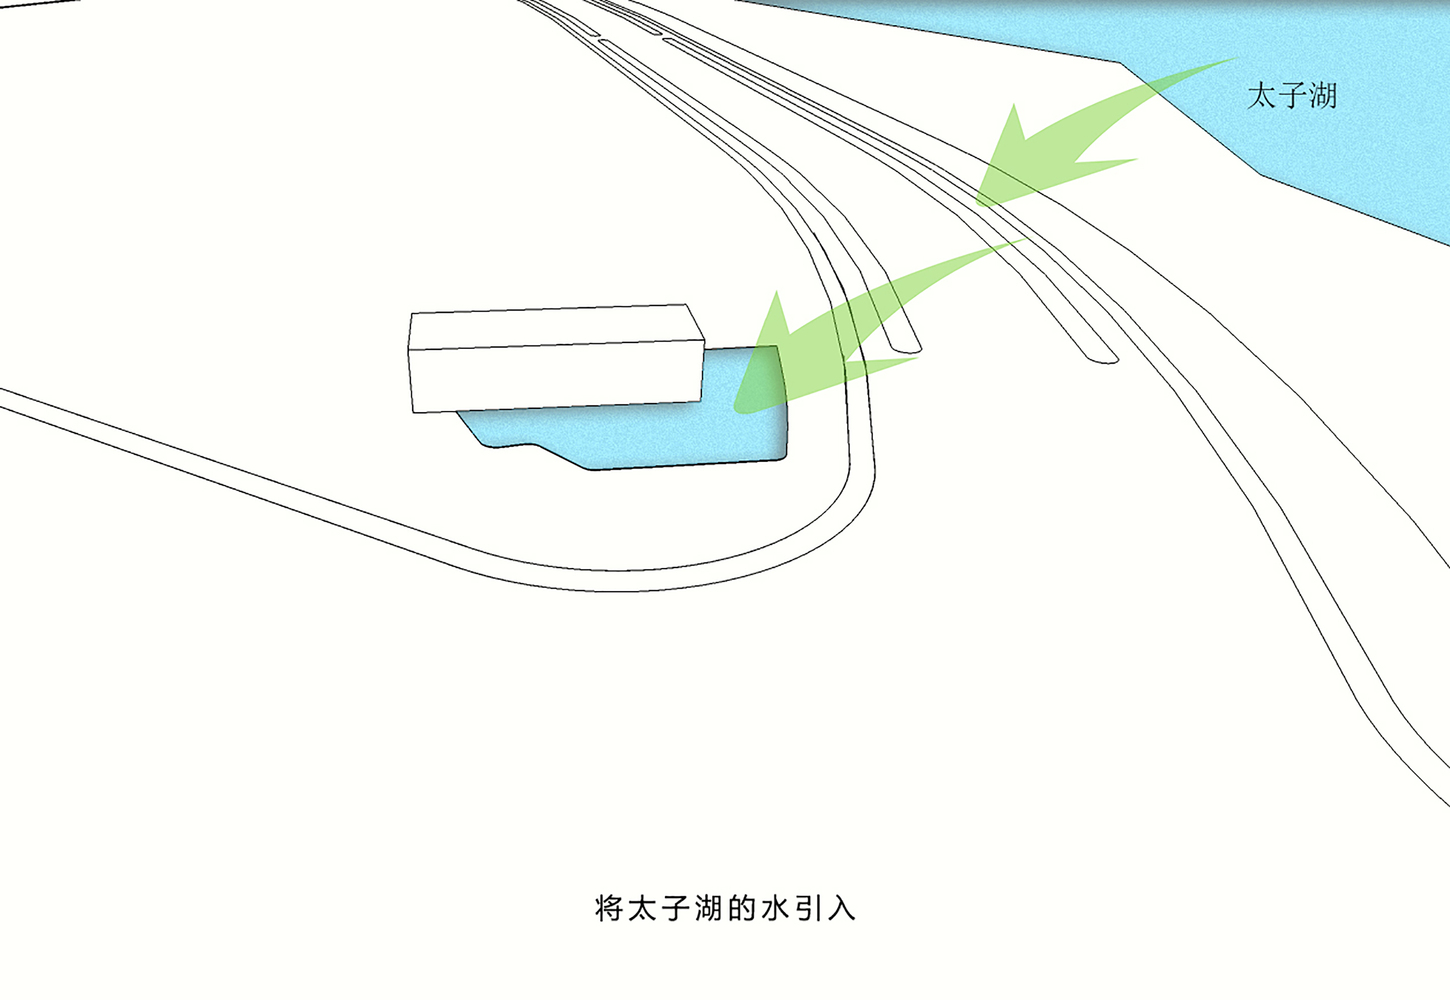 40将太子湖引入.jpg